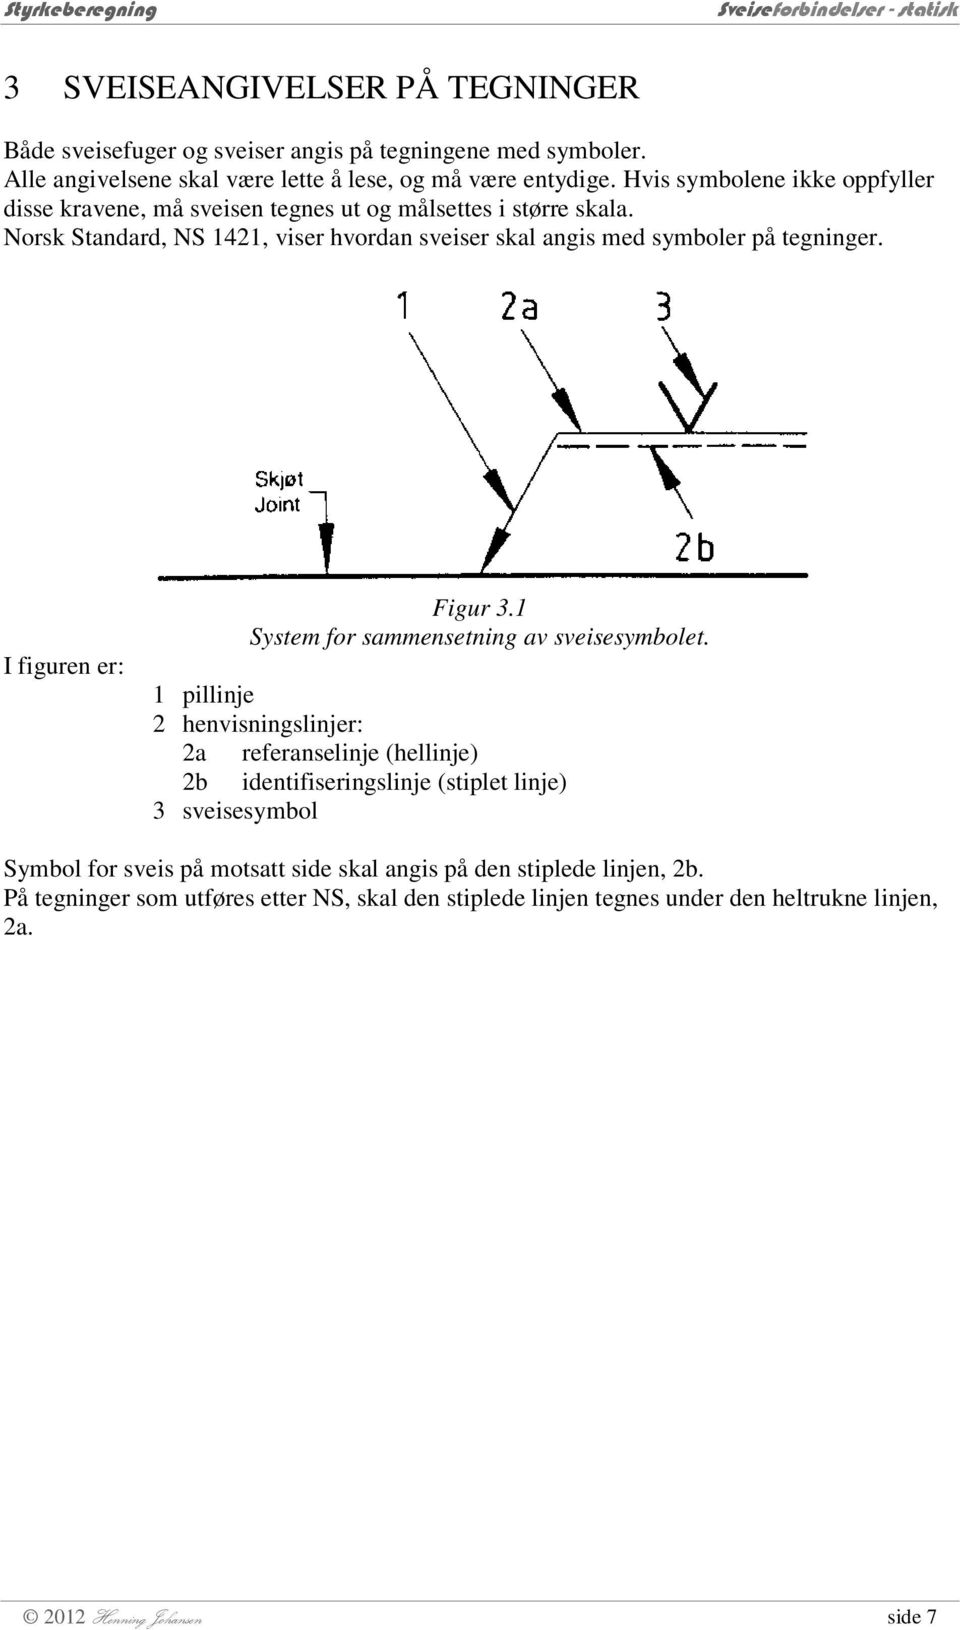 Norsk Standard, NS 141, viser hvordan sveiser skal angis med symboler på tegninger. I iguren er: Figur 3.1 System or sammensetning av sveisesymbolet.